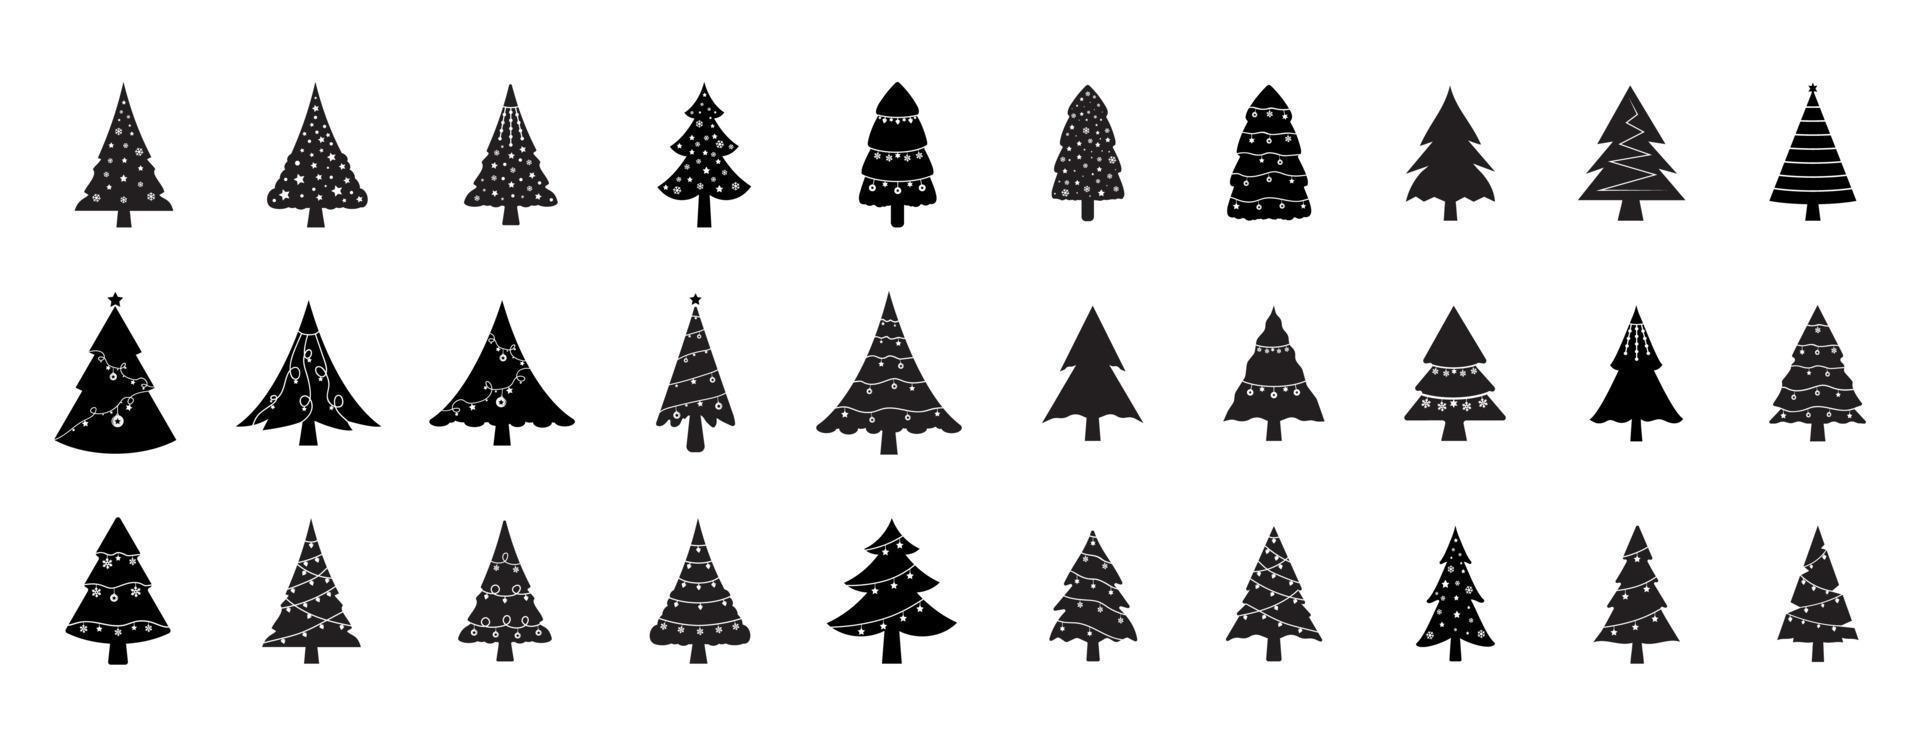 un ensemble d'illustration vectorielle d'icône d'arbre de noël noir, un ensemble de symbole d'icône d'arbre de noël. diverses silhouettes d'arbres de noël. ensemble de glyphe plat noir sapin de noël vecteur